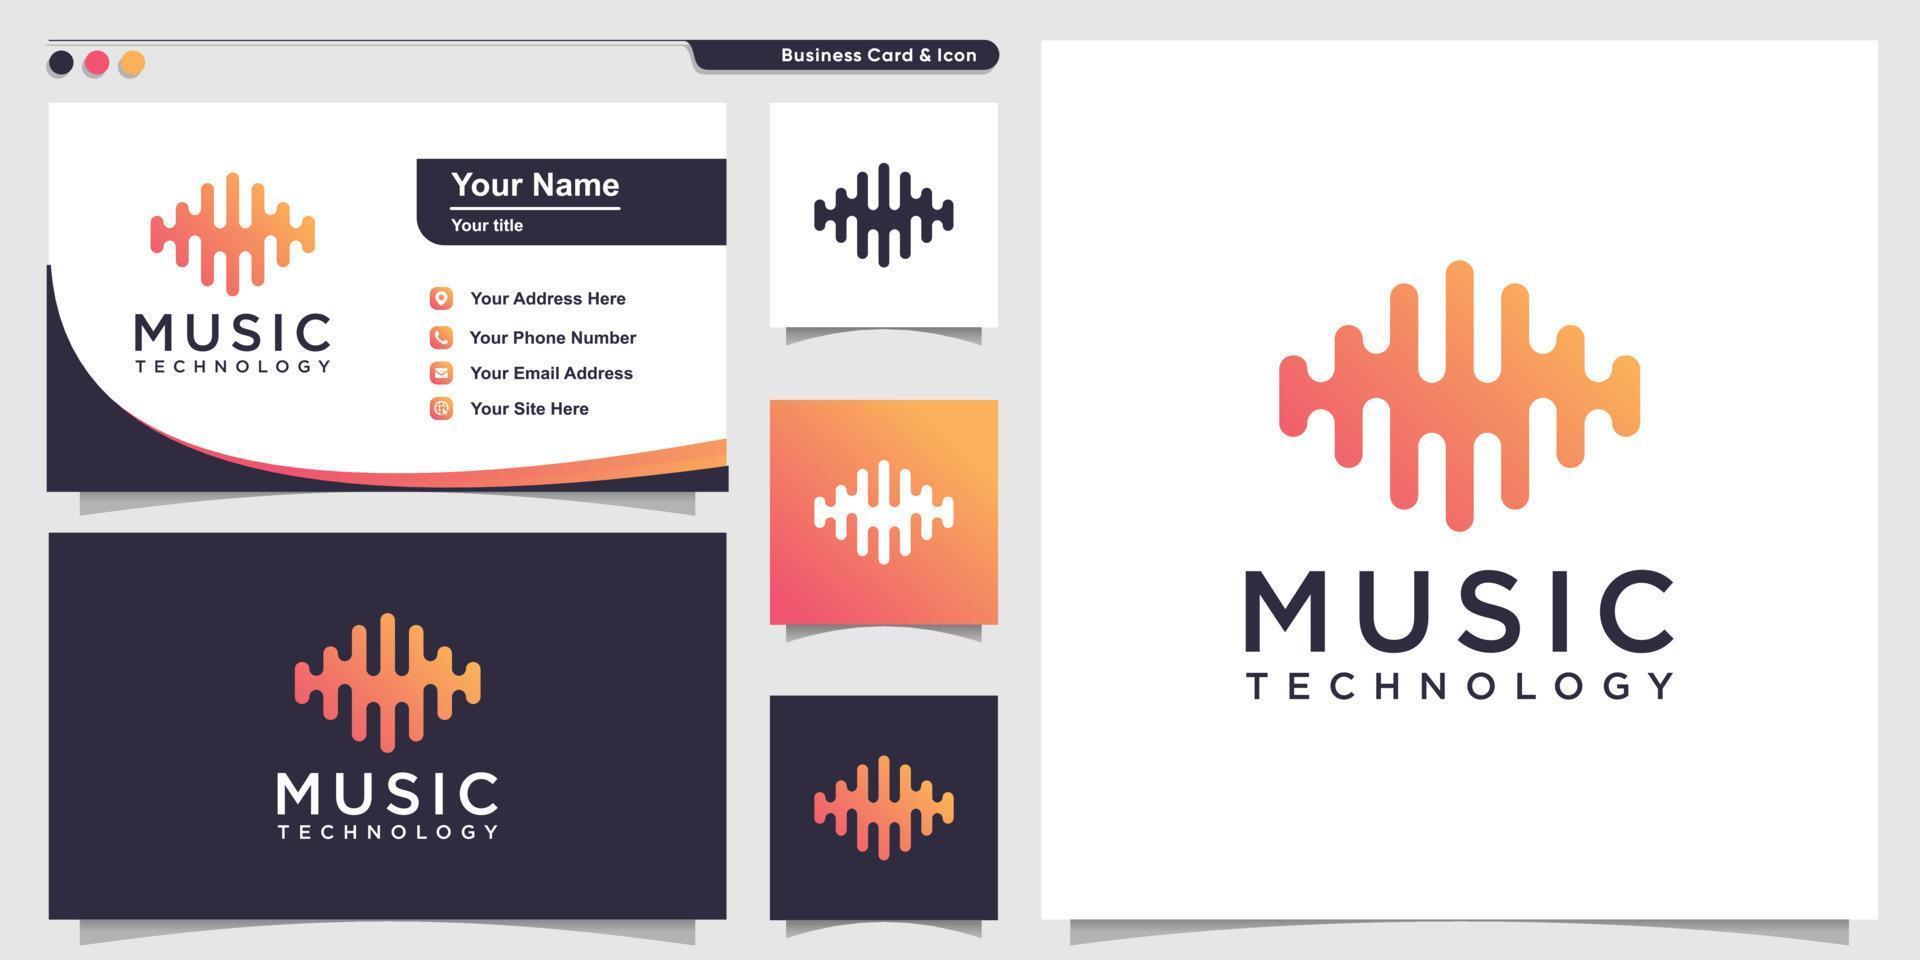 logotipo de música com estilo de arte de linha de tecnologia gradiente e modelo de design de cartão de visita premium vetor